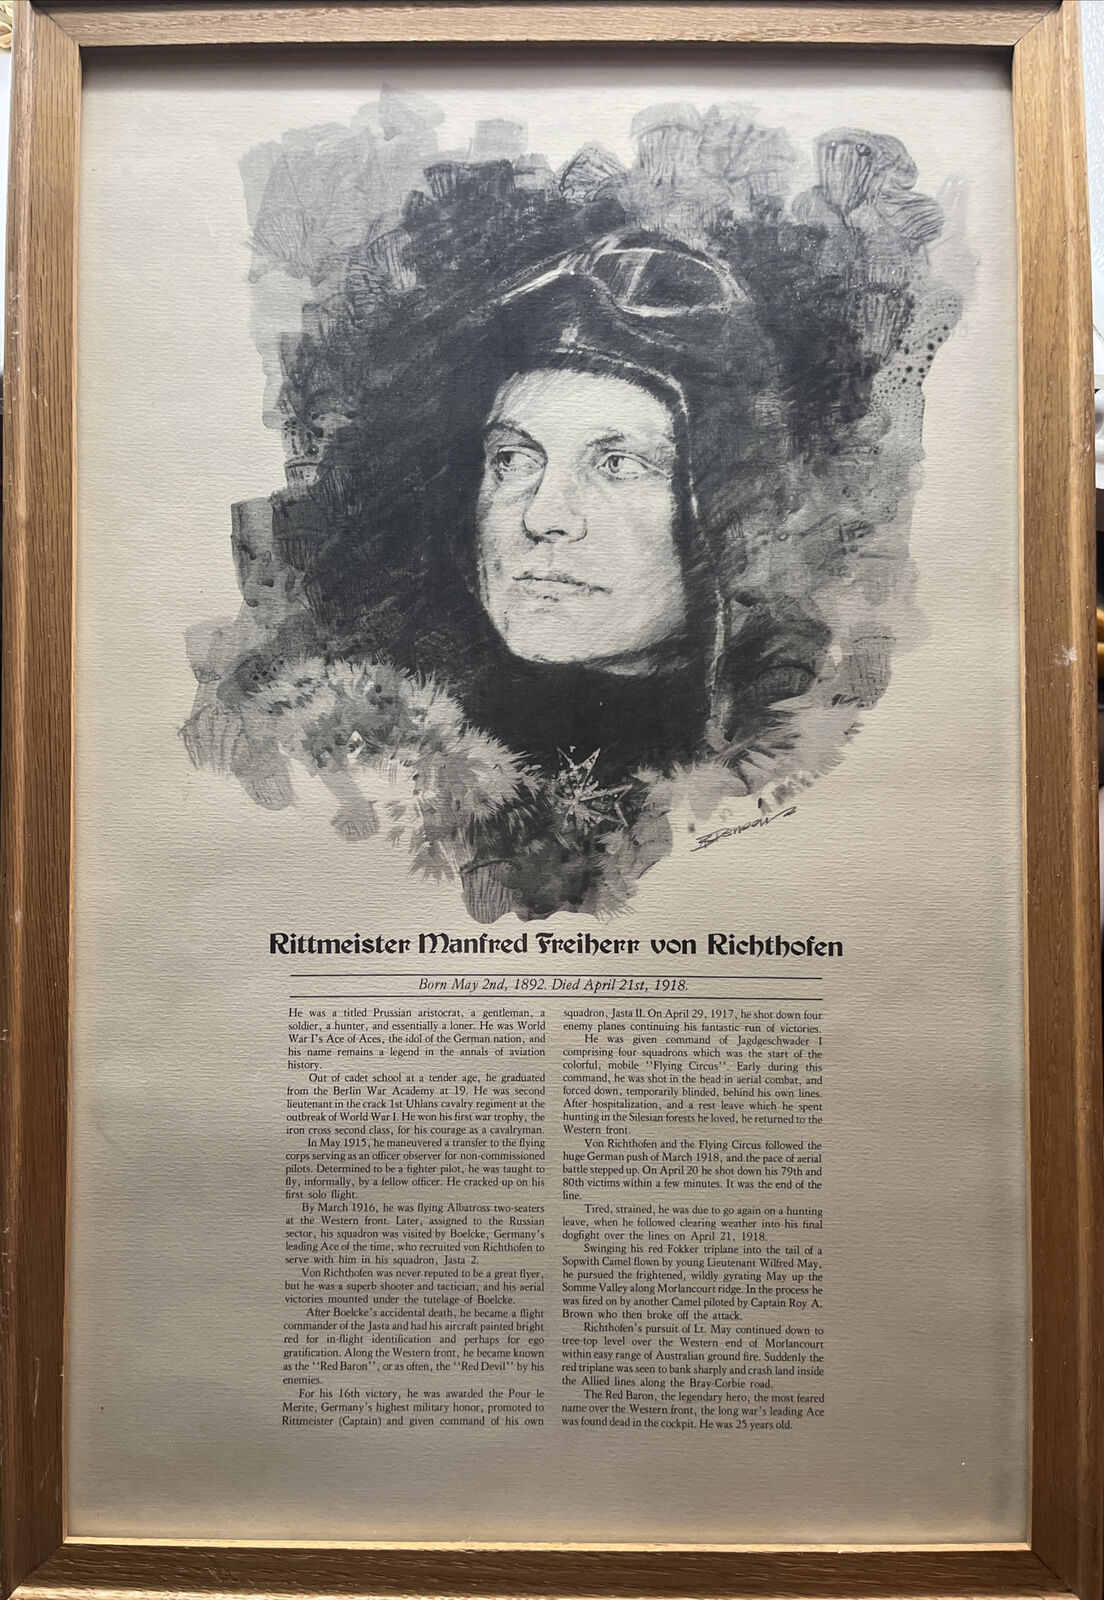 Rittmeister Manfred Freiherr von Richthofen Poster - WWI German Air Force Ace